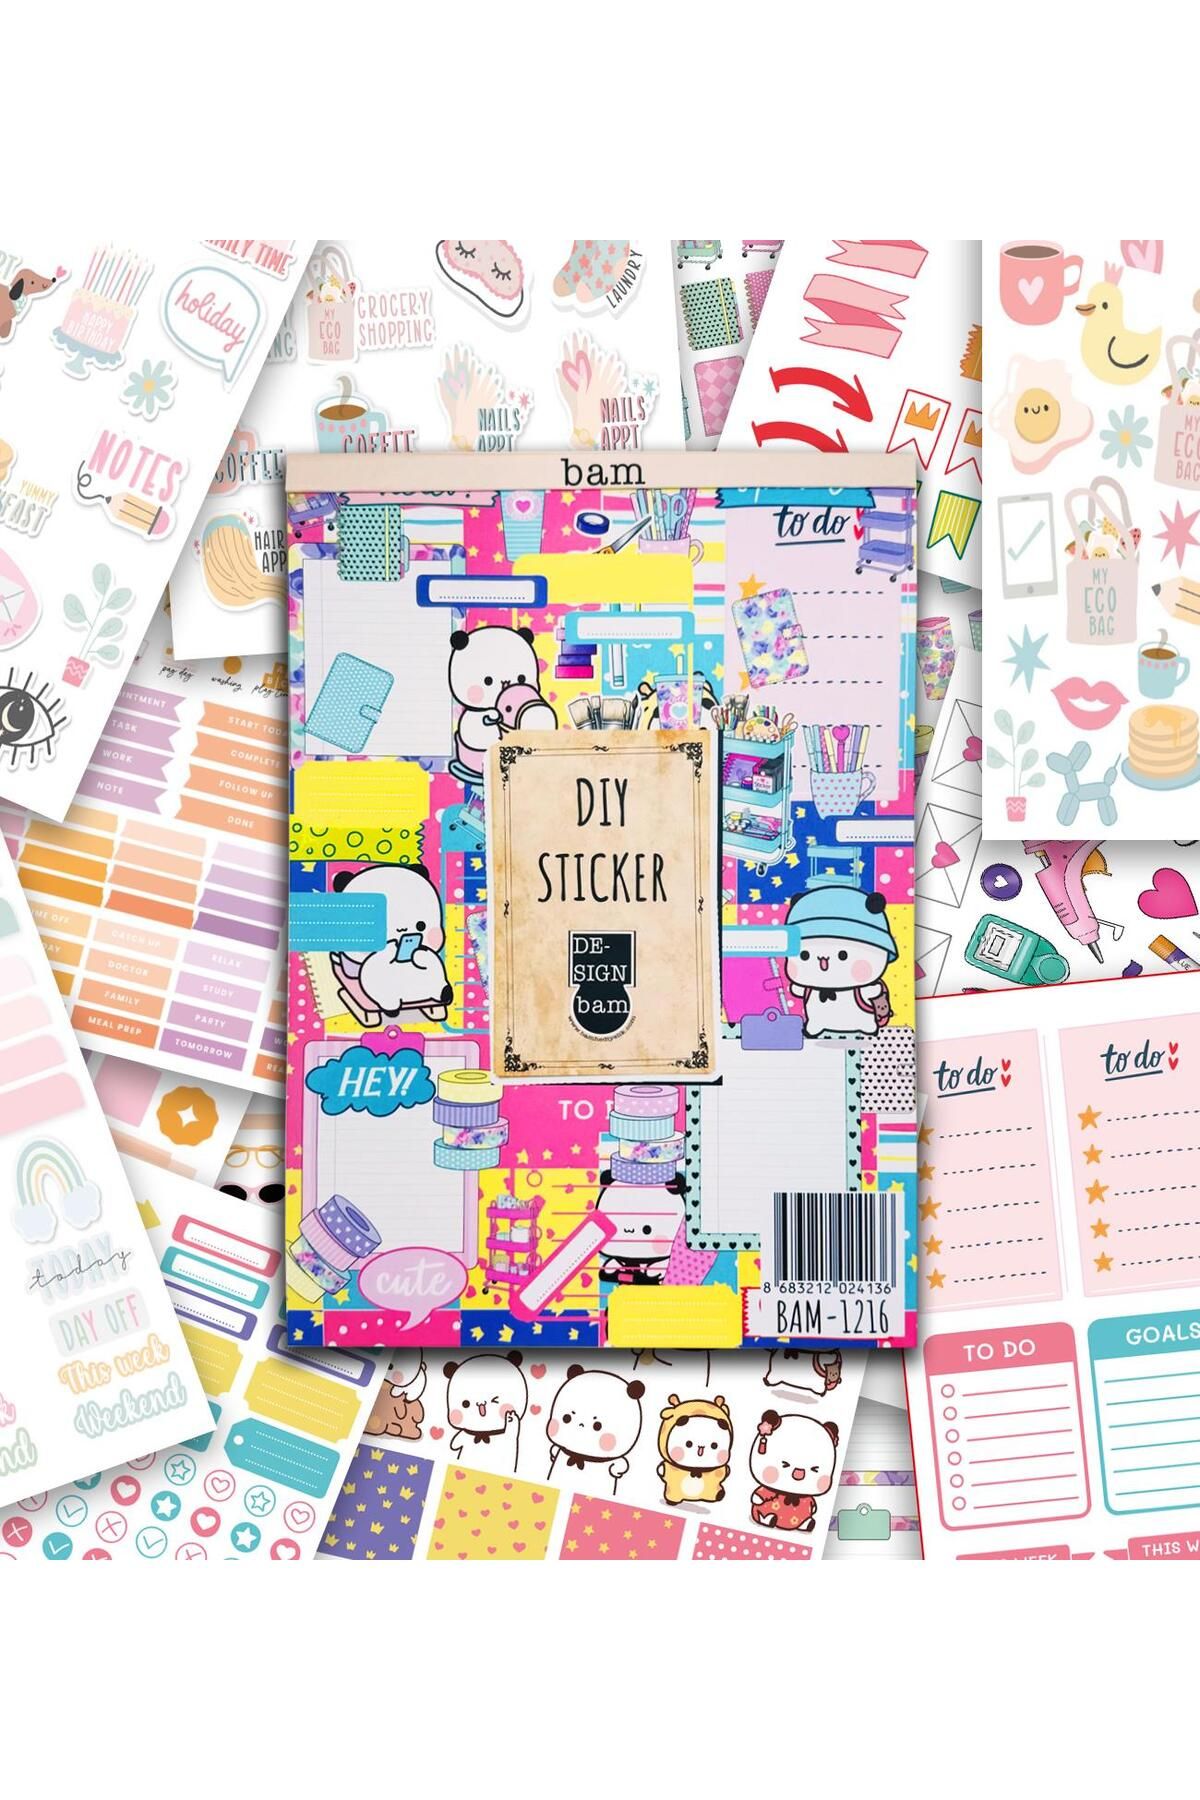 Gift Moda Girl Power My DIY Sticker Book  24 * 17 cm 16 Sayfa Özel Tasarım Rengarenk Sticker Kitabı